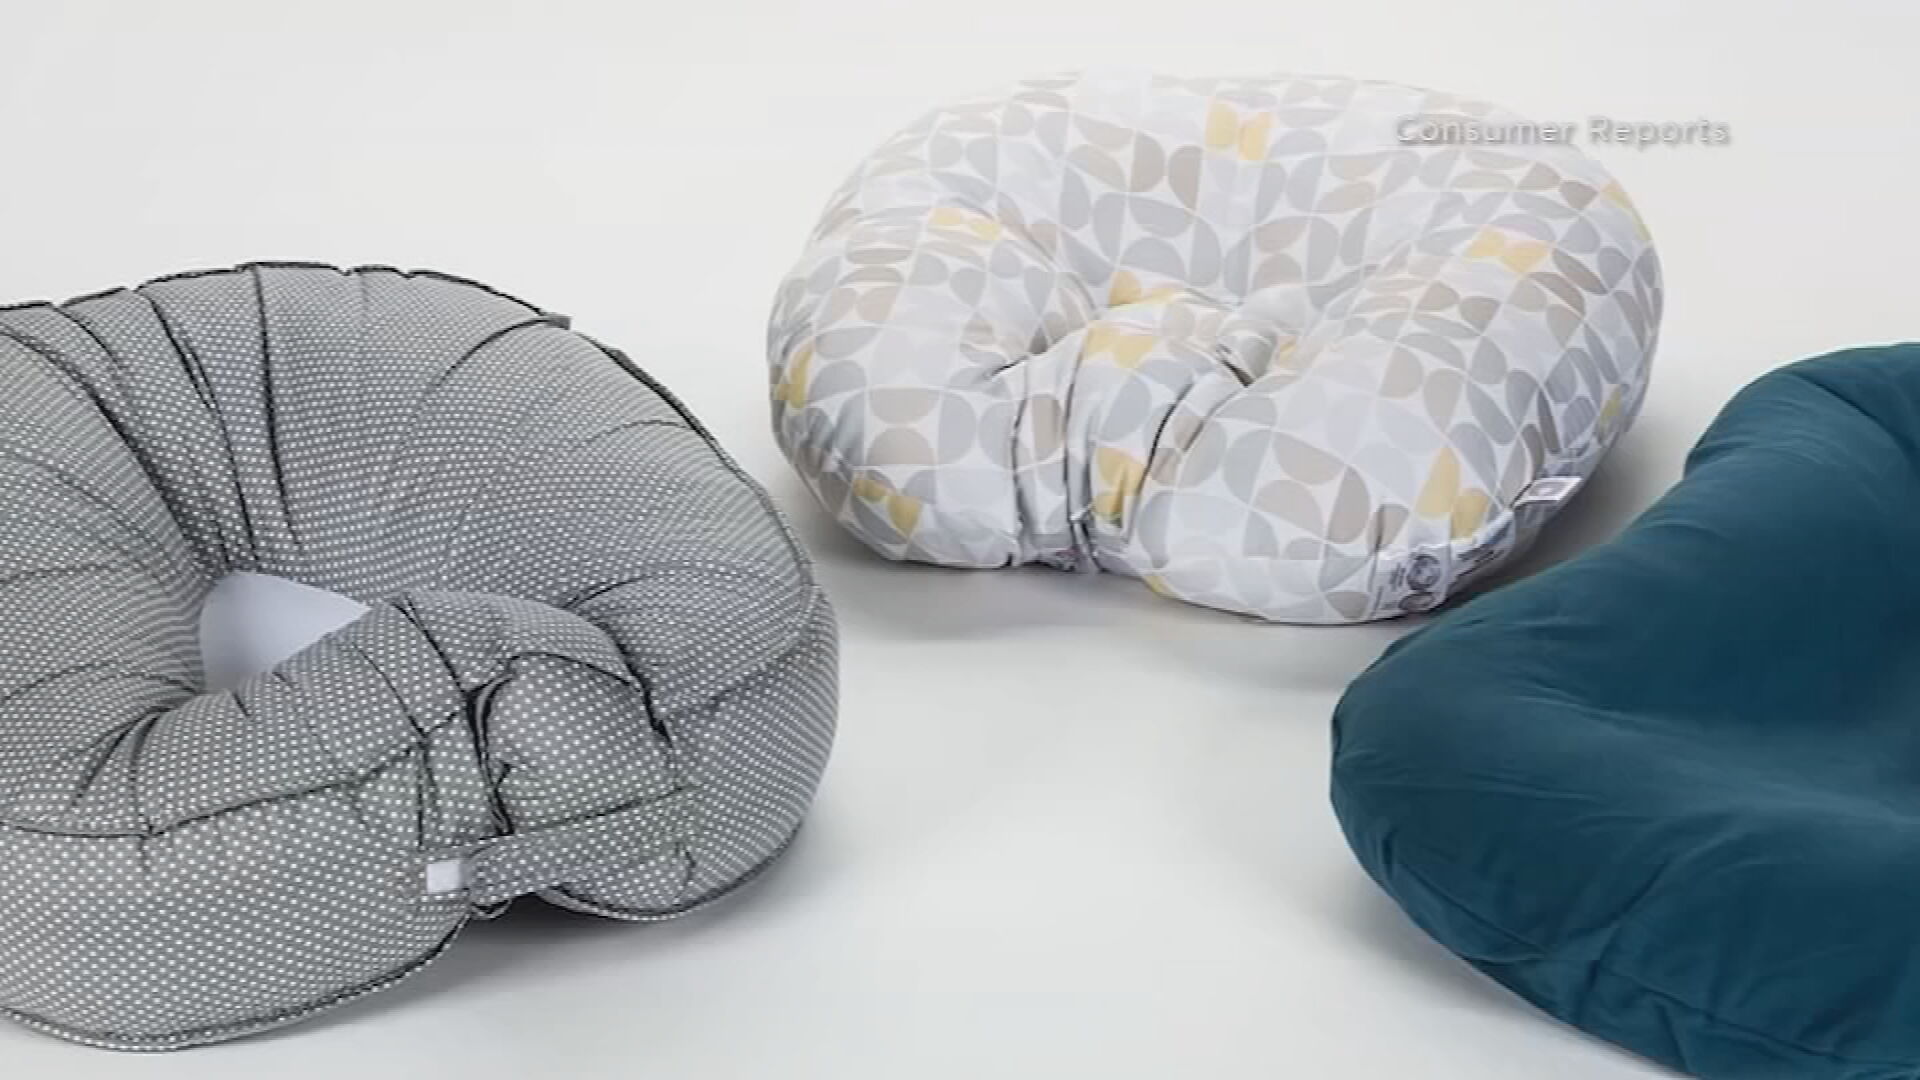 Nursing pillows not safe for sleeping infants - Mary Bridge Children's